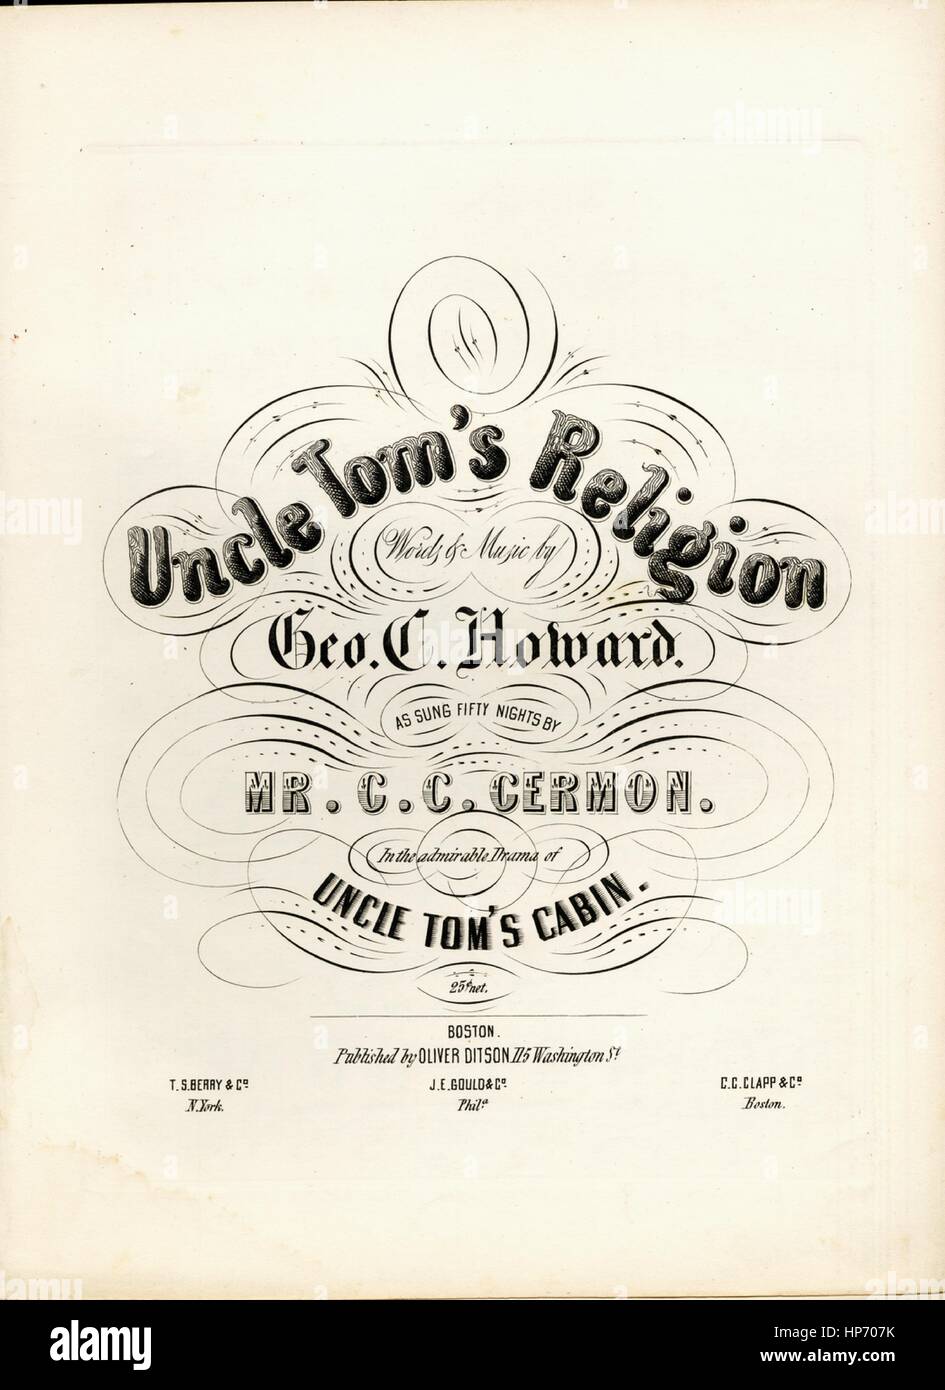 Sheet Music image de couverture de la chanson 'Religion' de l'Oncle Tom,  avec une œuvre originale 'Lecture notes Paroles et musique par Geo C  Howard', United States, 1900. L'éditeur est répertorié comme '